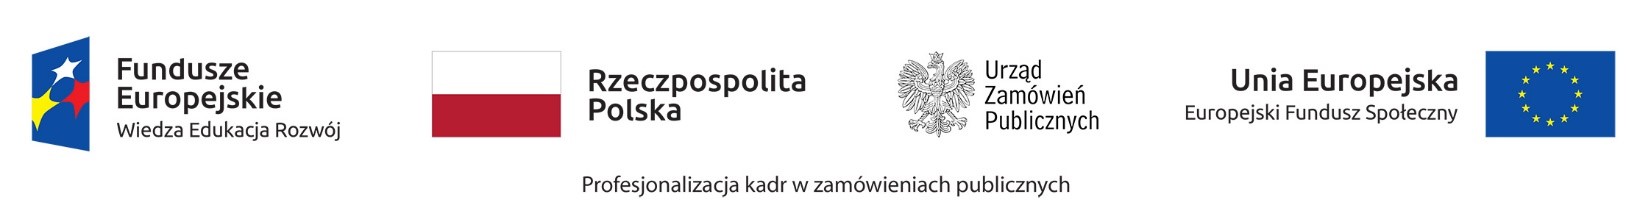 Logotypy: Fundusze Europejskie Wiedza Edukacja Rozwój; Rzeczpospolita Polska flaga Polski; Urząd Zamówień Publicznych logotyp orła w koronie; Unia Europejska Europejski Fundusz Społeczny flaga UE